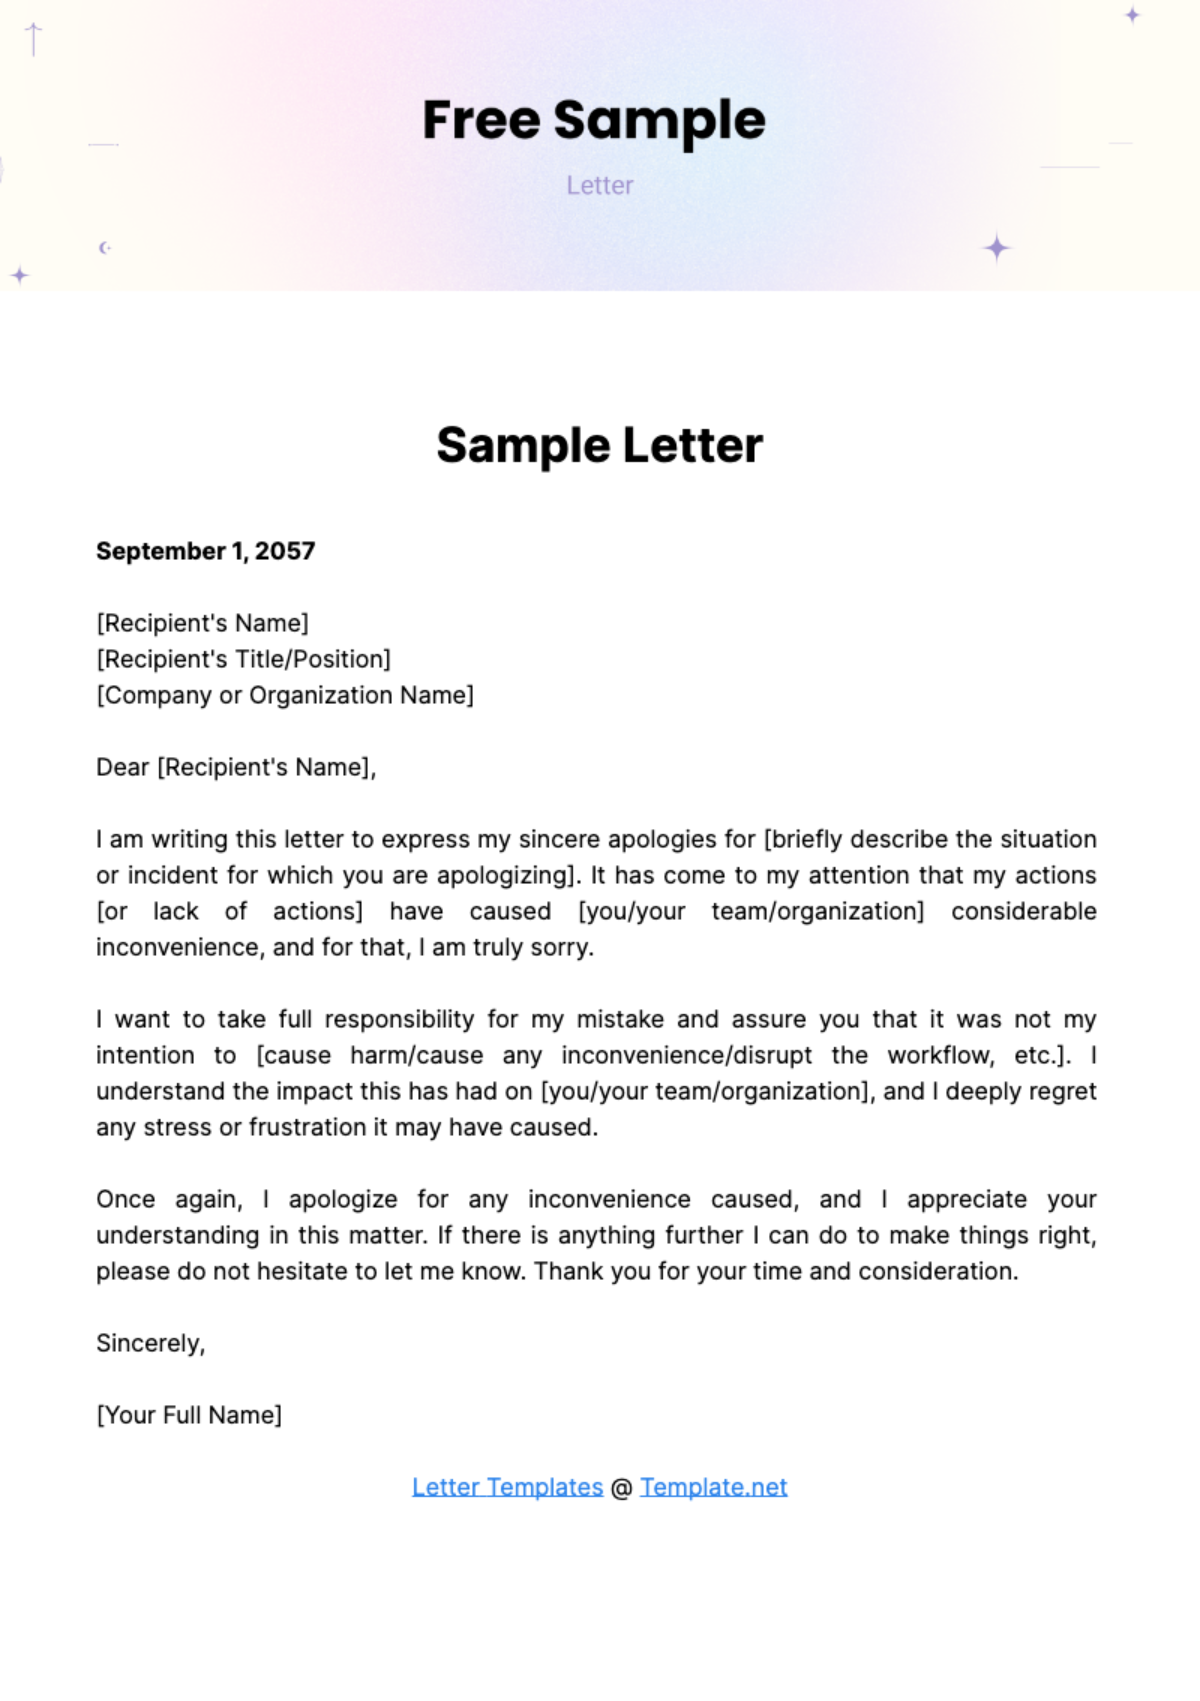 Sample Letter Template